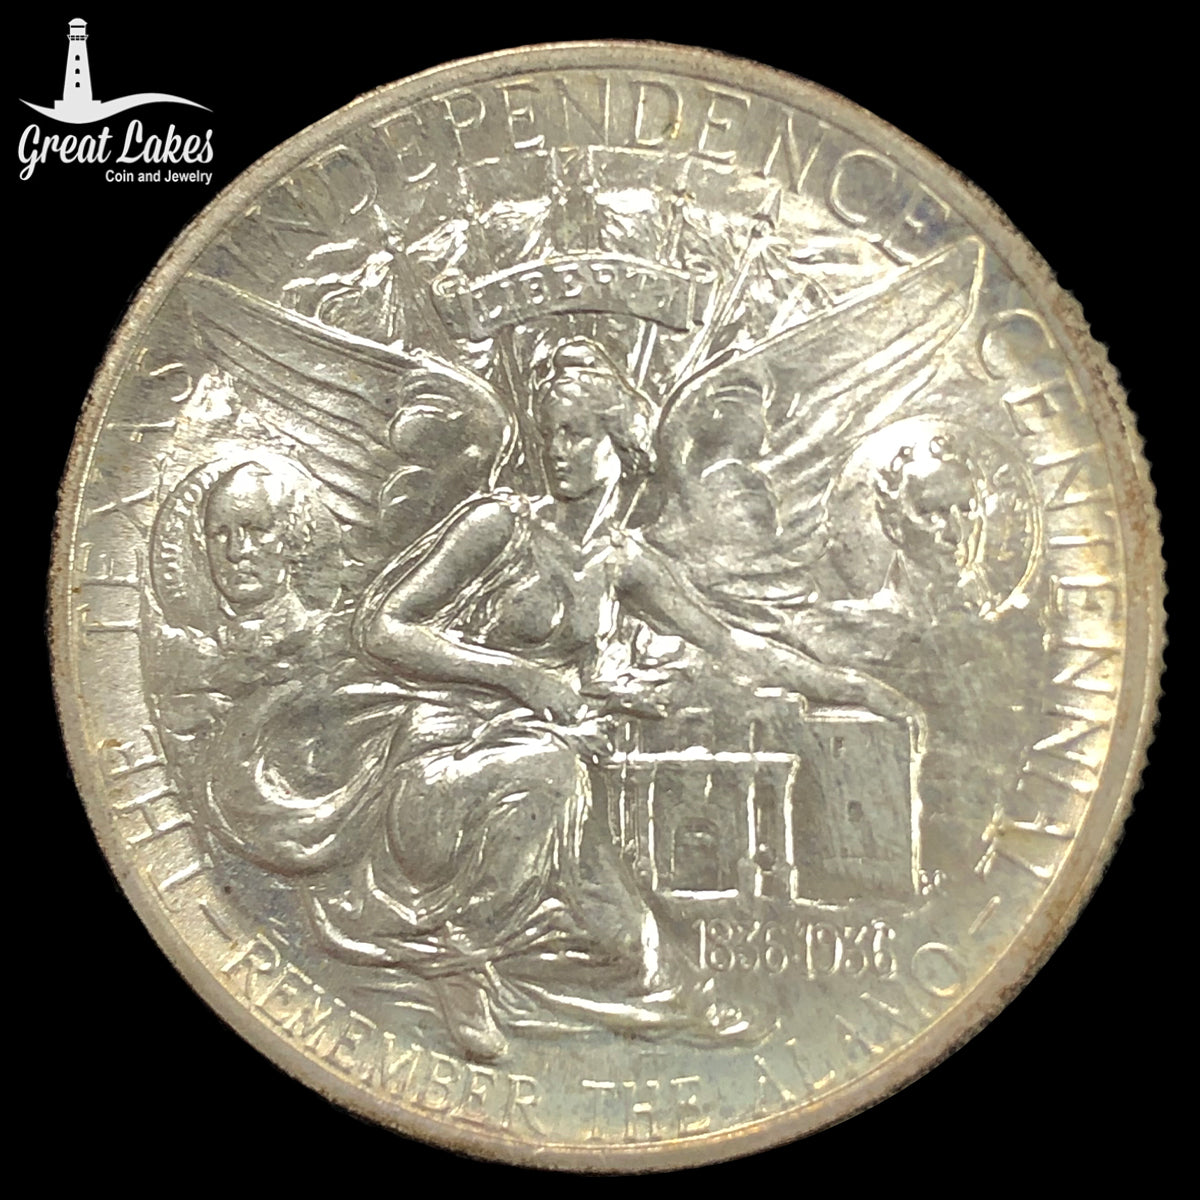 1937 Texas Commemorative Half Dollar (BU)